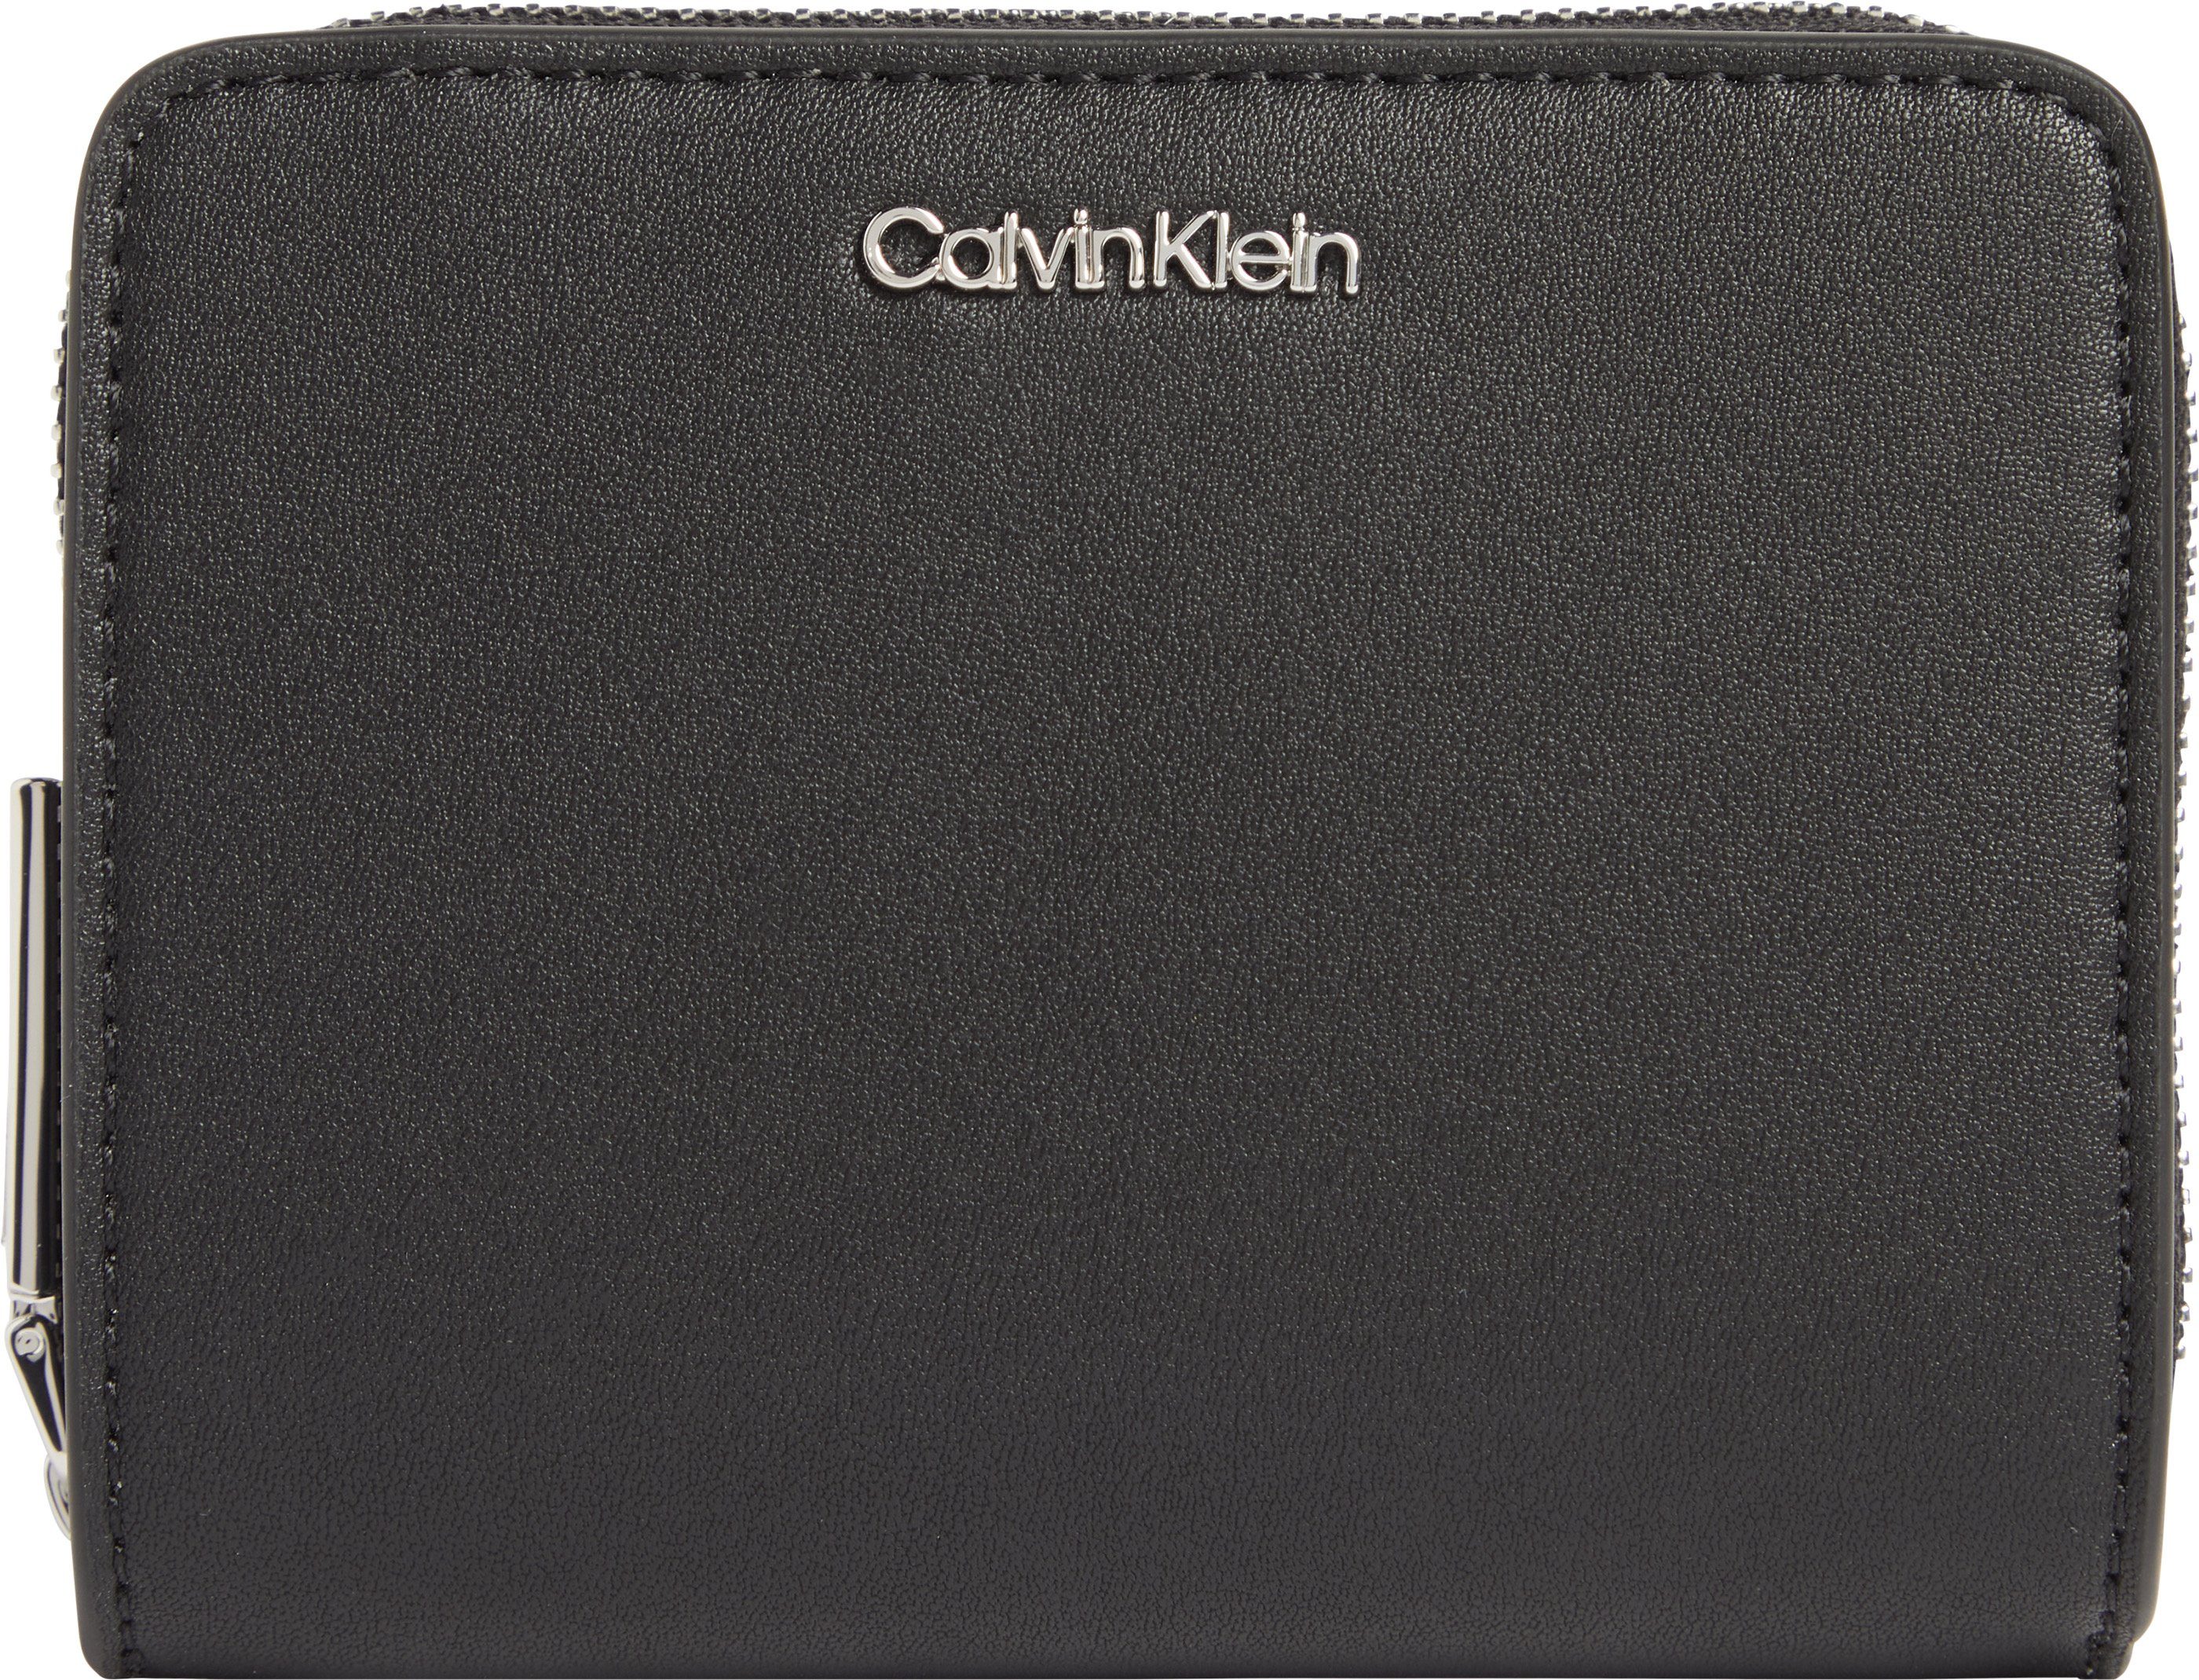 Calvin Klein Geldbörse, Logo aus silberfarbenem Metall | Geldbörsen